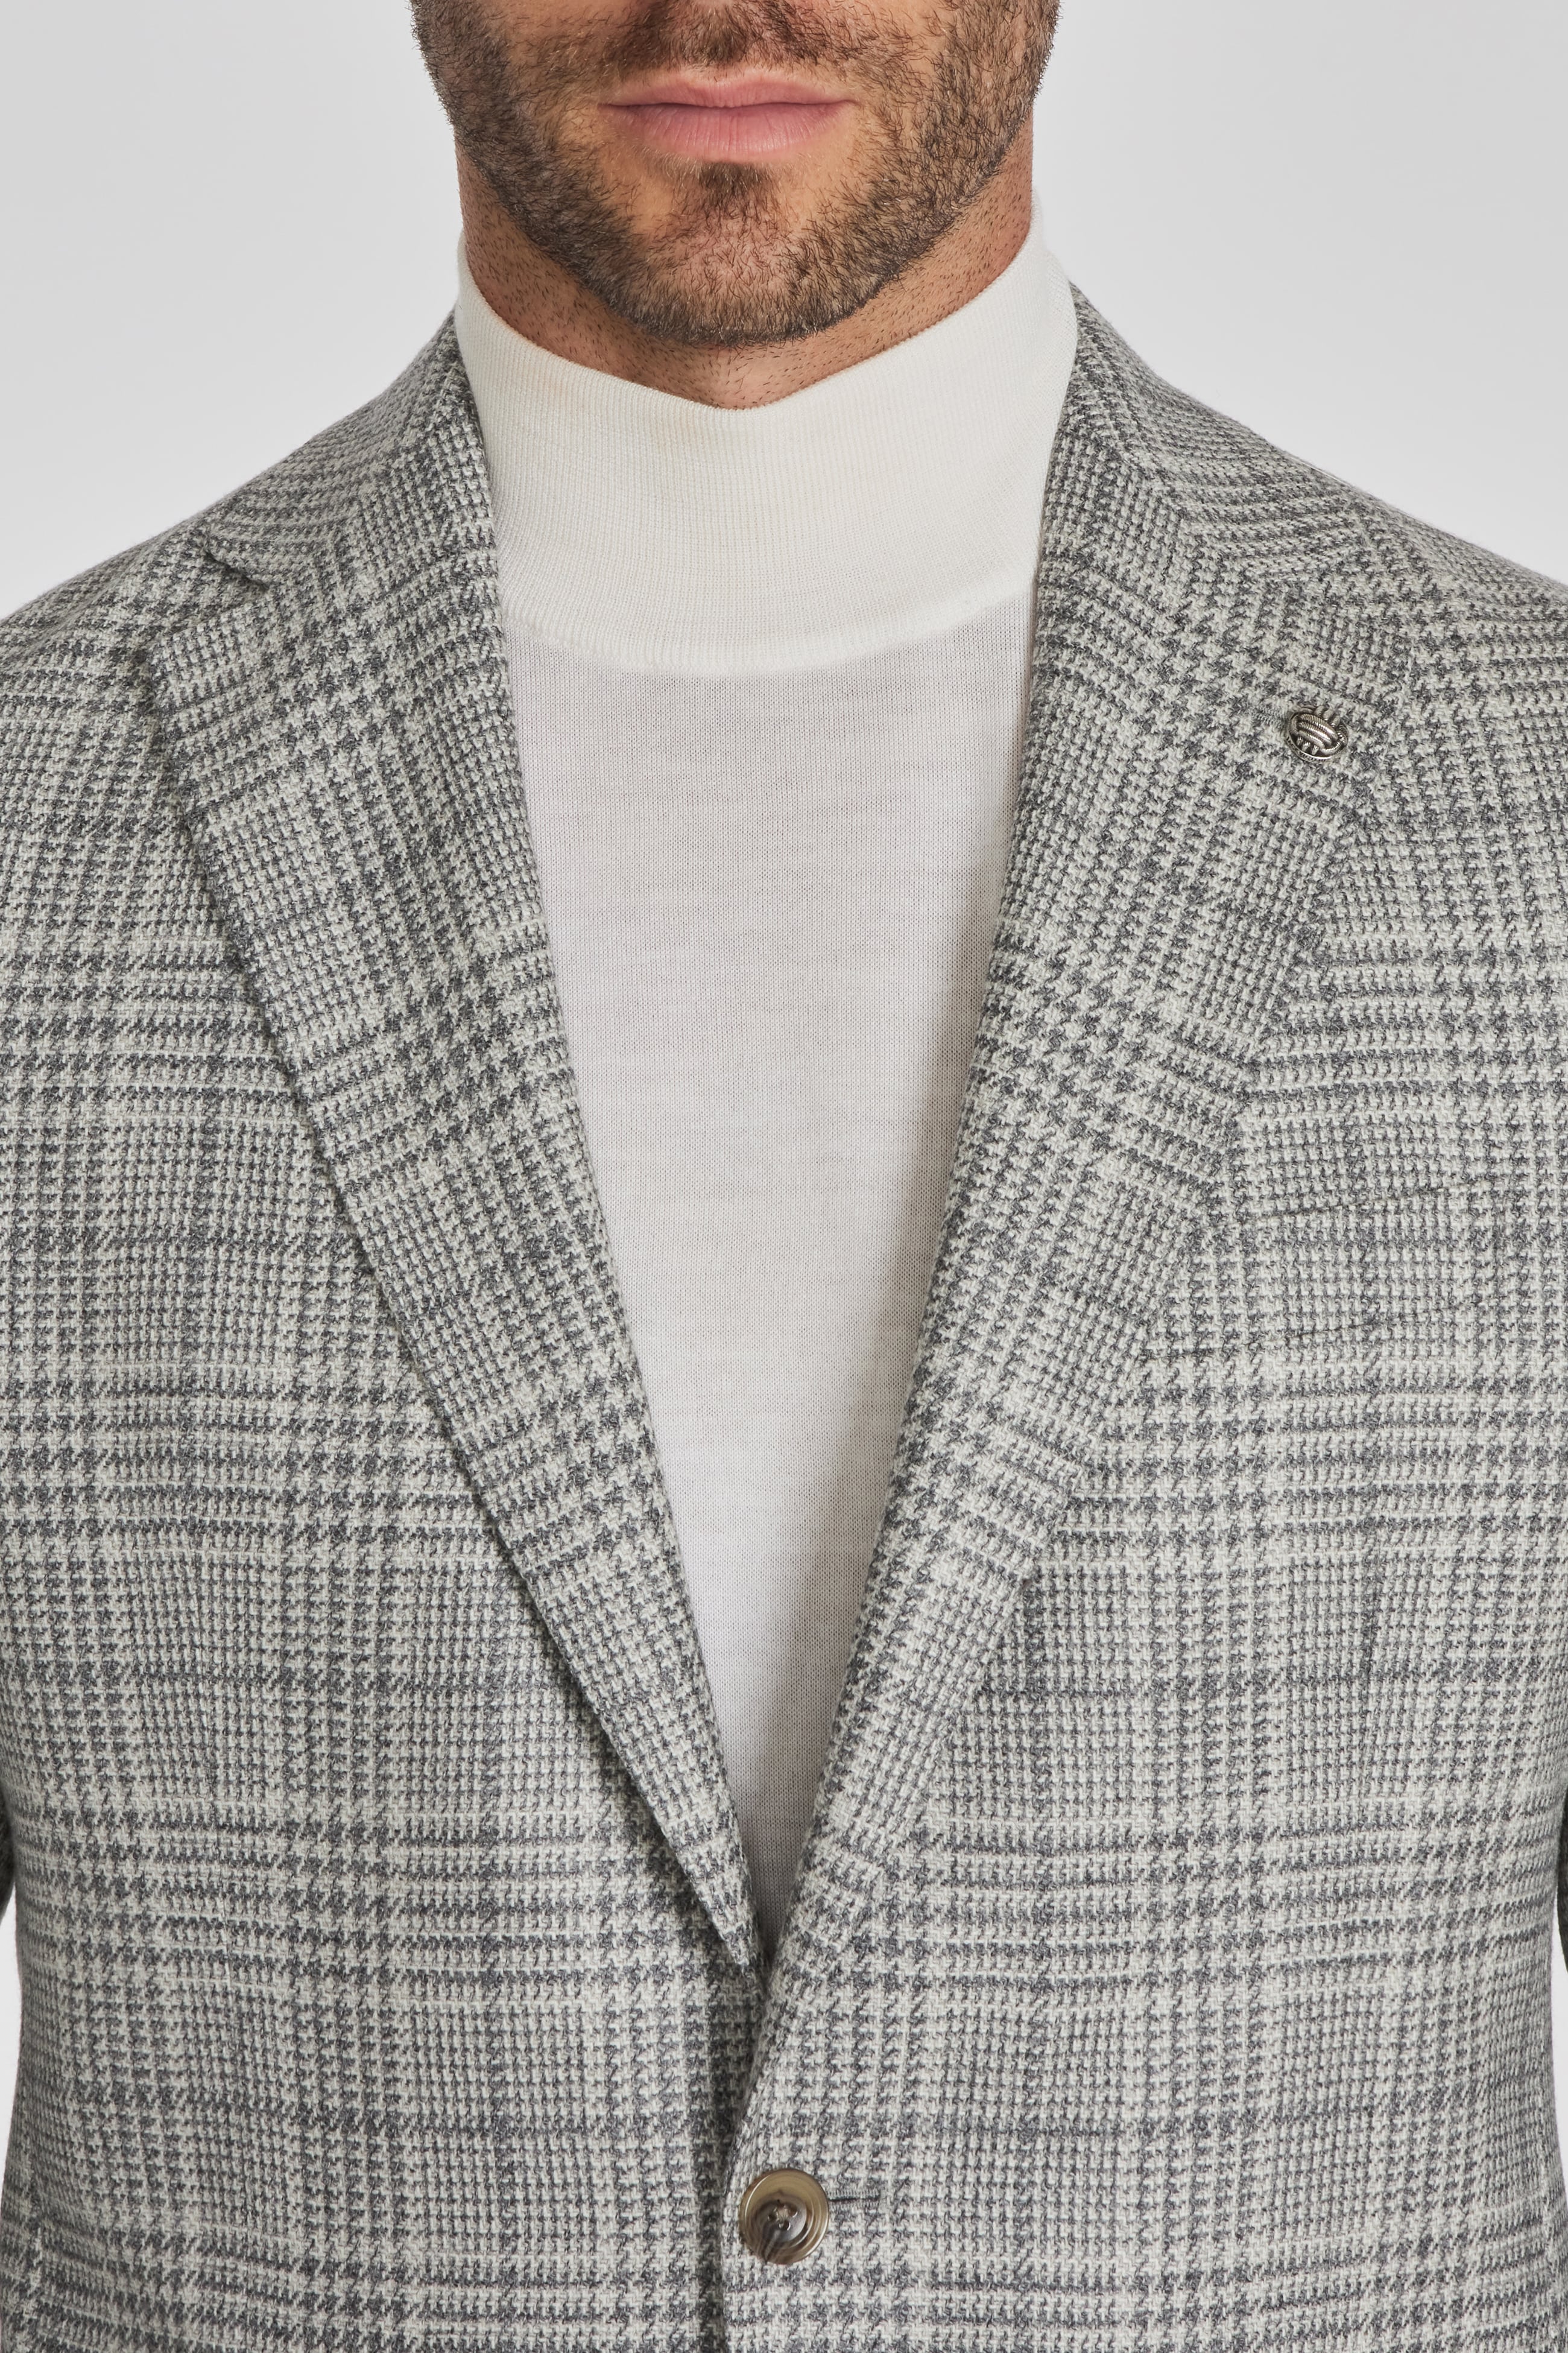 Alt view 1 McAllen Plaid Wool and Silk Blazer in Light Grey